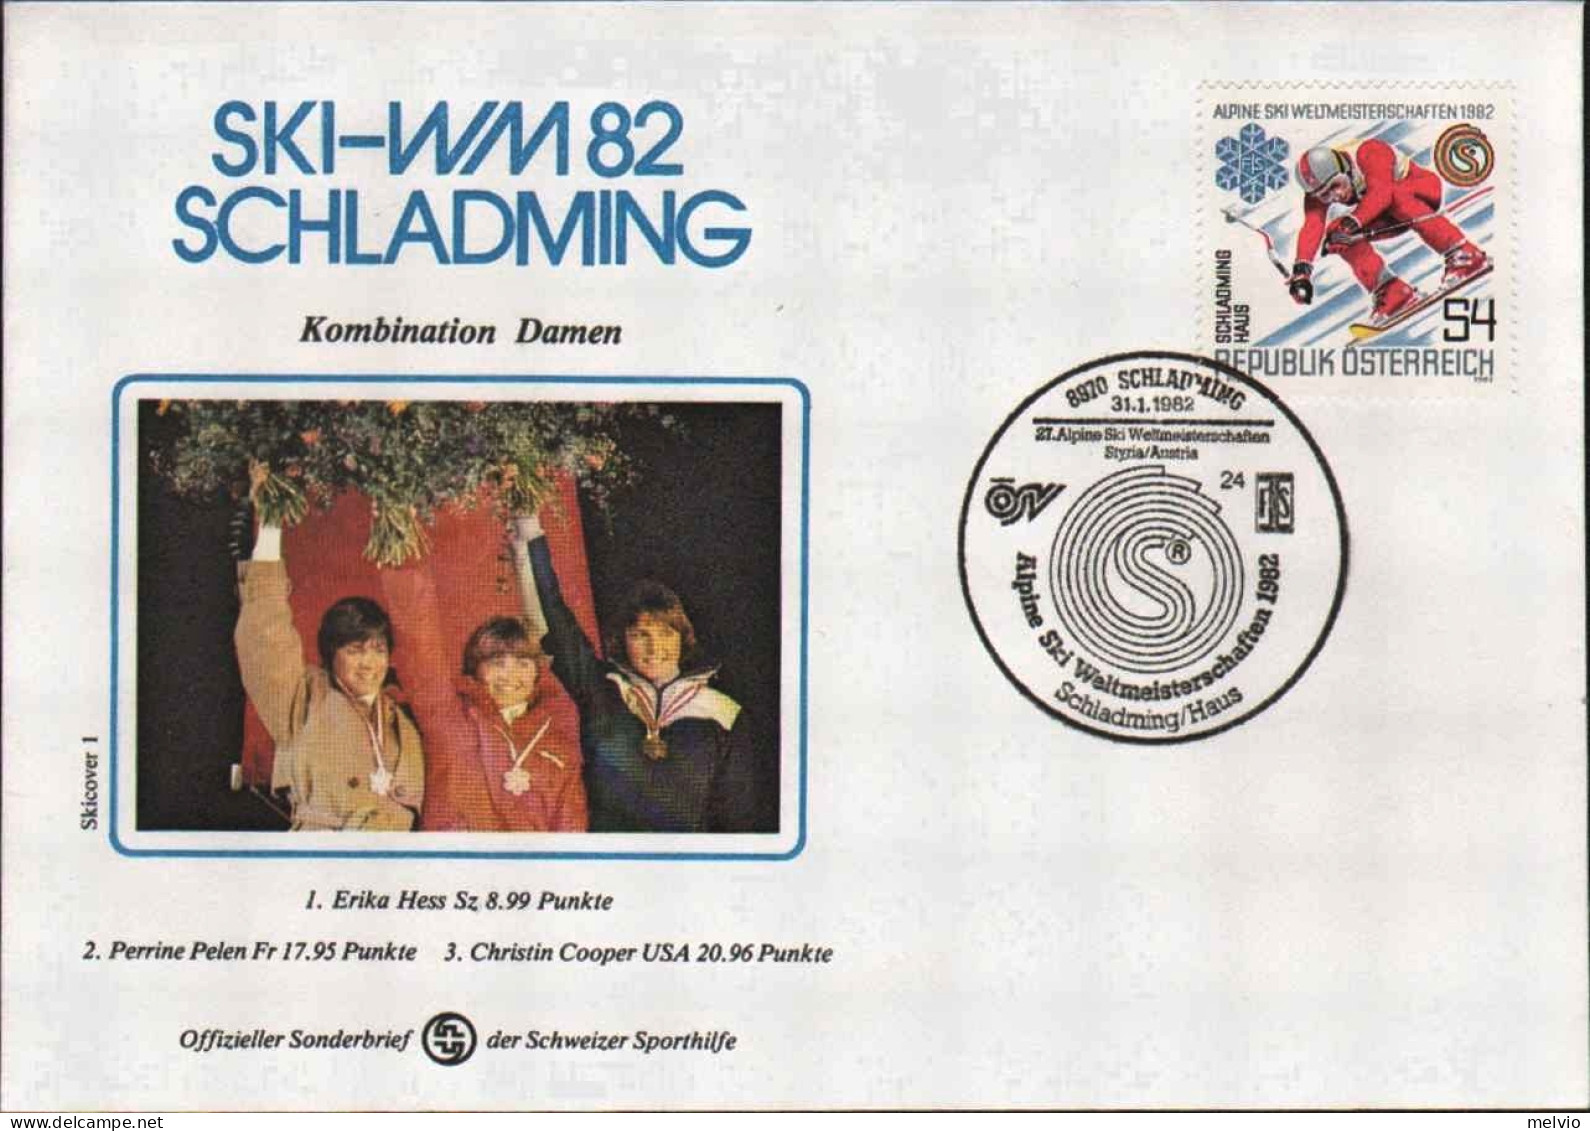 1982-Autriche Osterreich Austria S.1v."campionati Mondiali Di Sci Alpino"su Fdc  - FDC